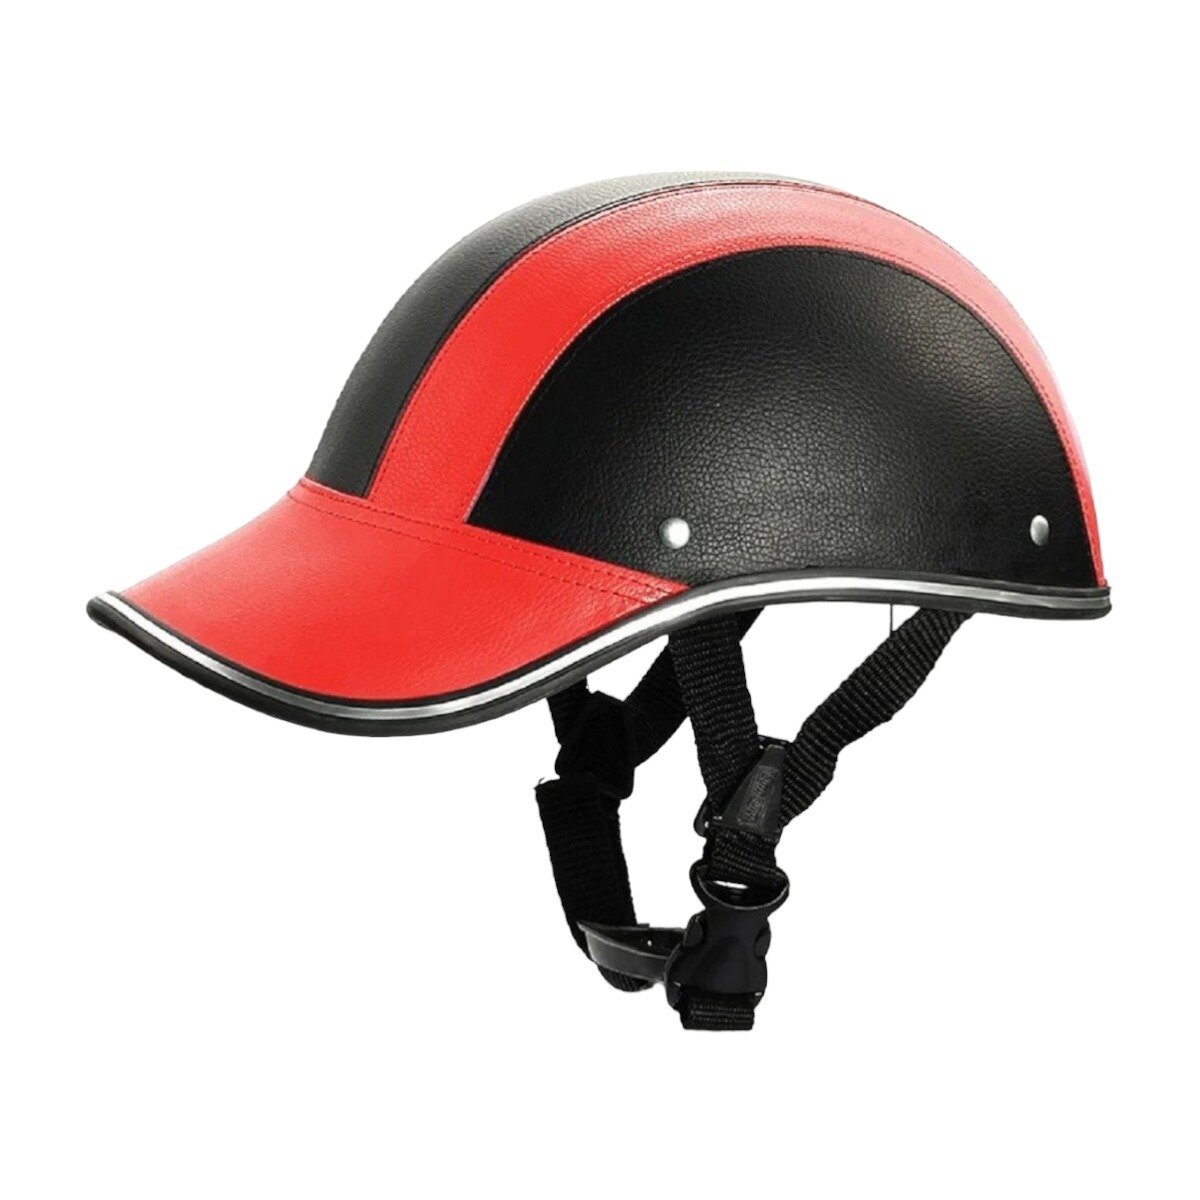 Каска кепка Goldwing открытый шлем под кожу для мотоциклиста на мотоцикл чоппер круизер скутер мопед, красно-черная